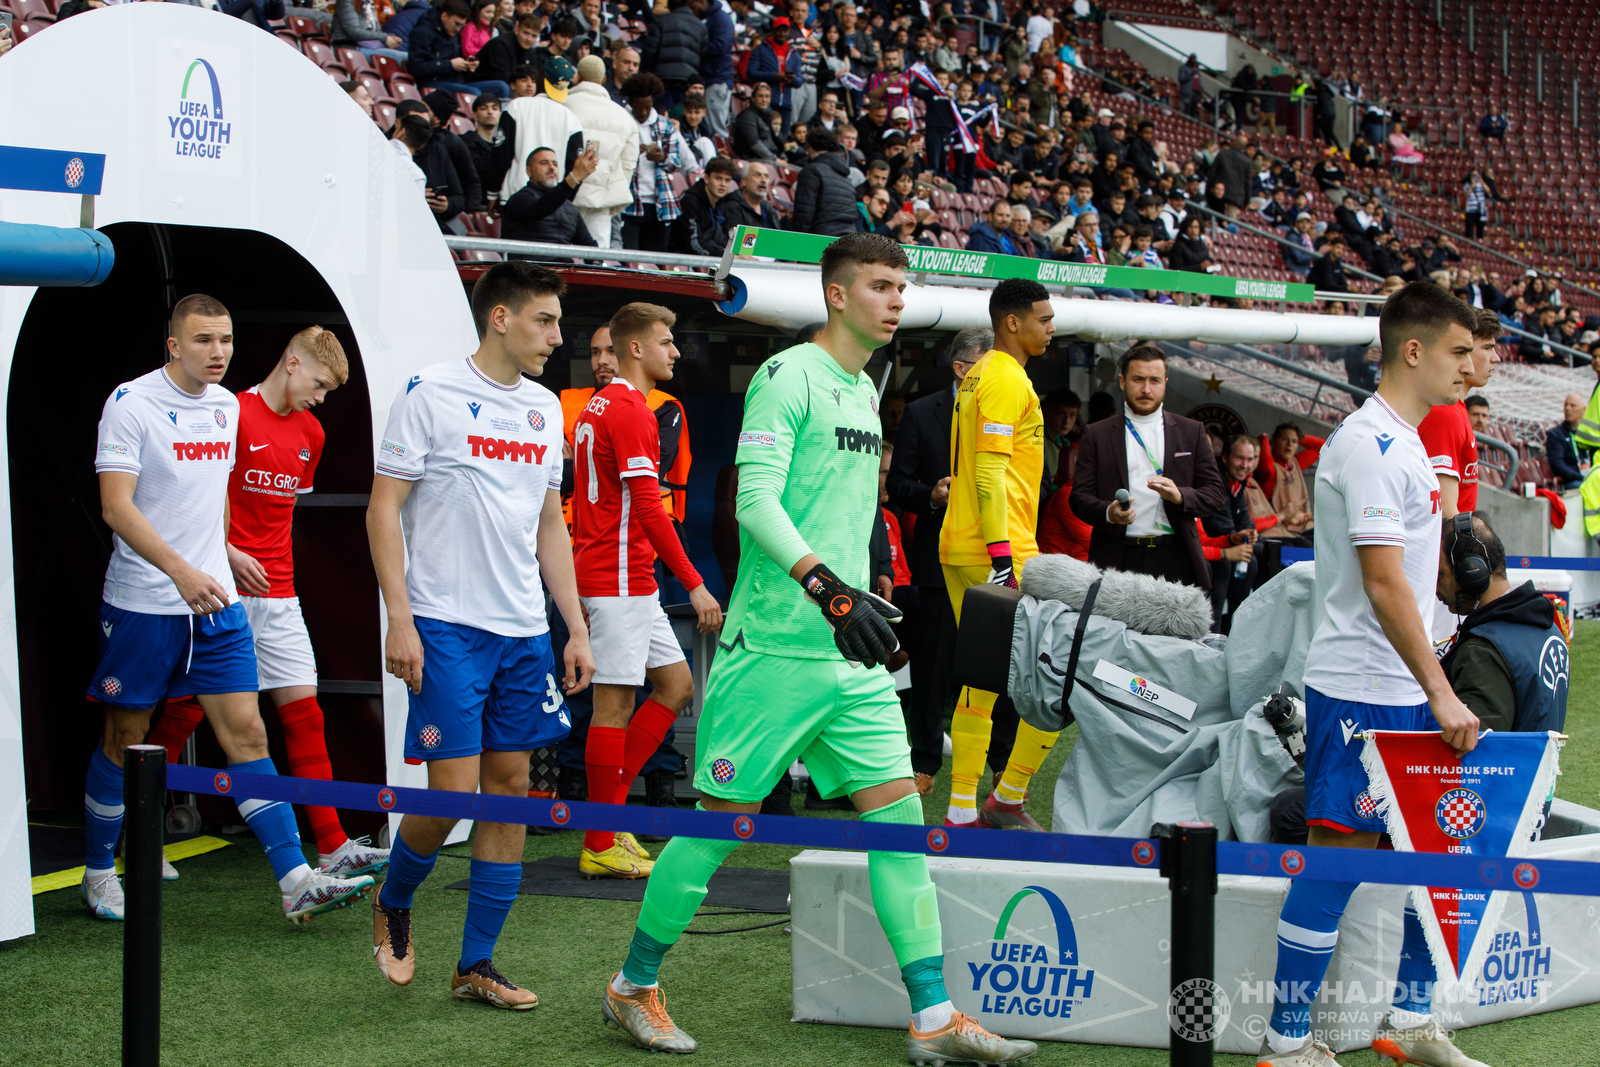 Dutch club AZ routs Hajduk 5-0 to win UEFA Youth League